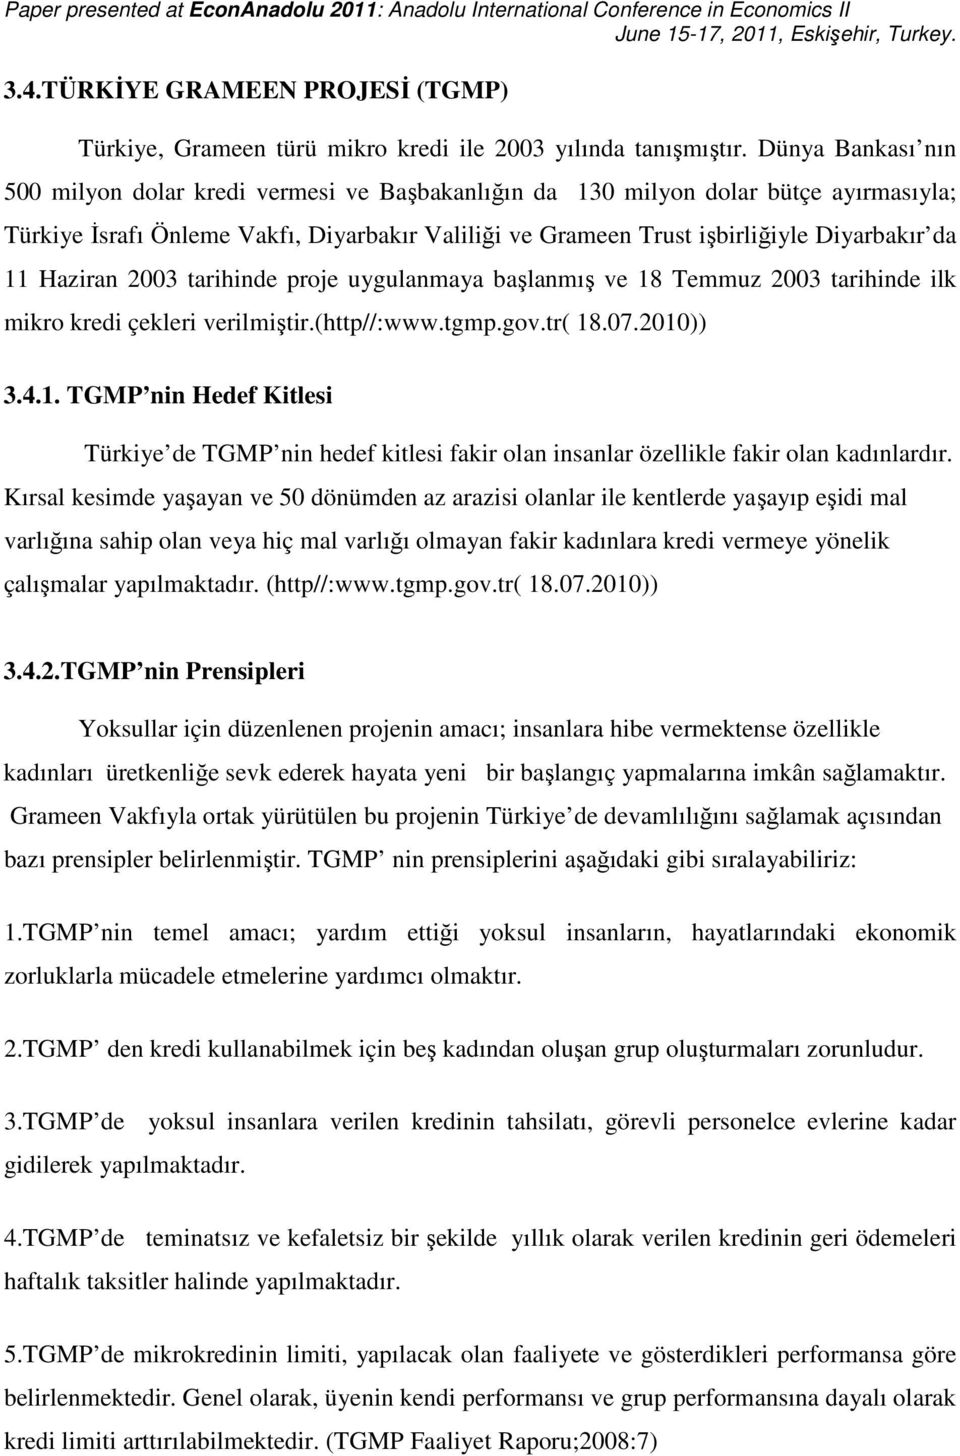 11 Haziran 2003 tarihinde proje uygulanmaya başlanmış ve 18 Temmuz 2003 tarihinde ilk mikro kredi çekleri verilmiştir.(http//:www.tgmp.gov.tr( 18.07.2010)) 3.4.1. TGMP nin Hedef Kitlesi Türkiye de TGMP nin hedef kitlesi fakir olan insanlar özellikle fakir olan kadınlardır.